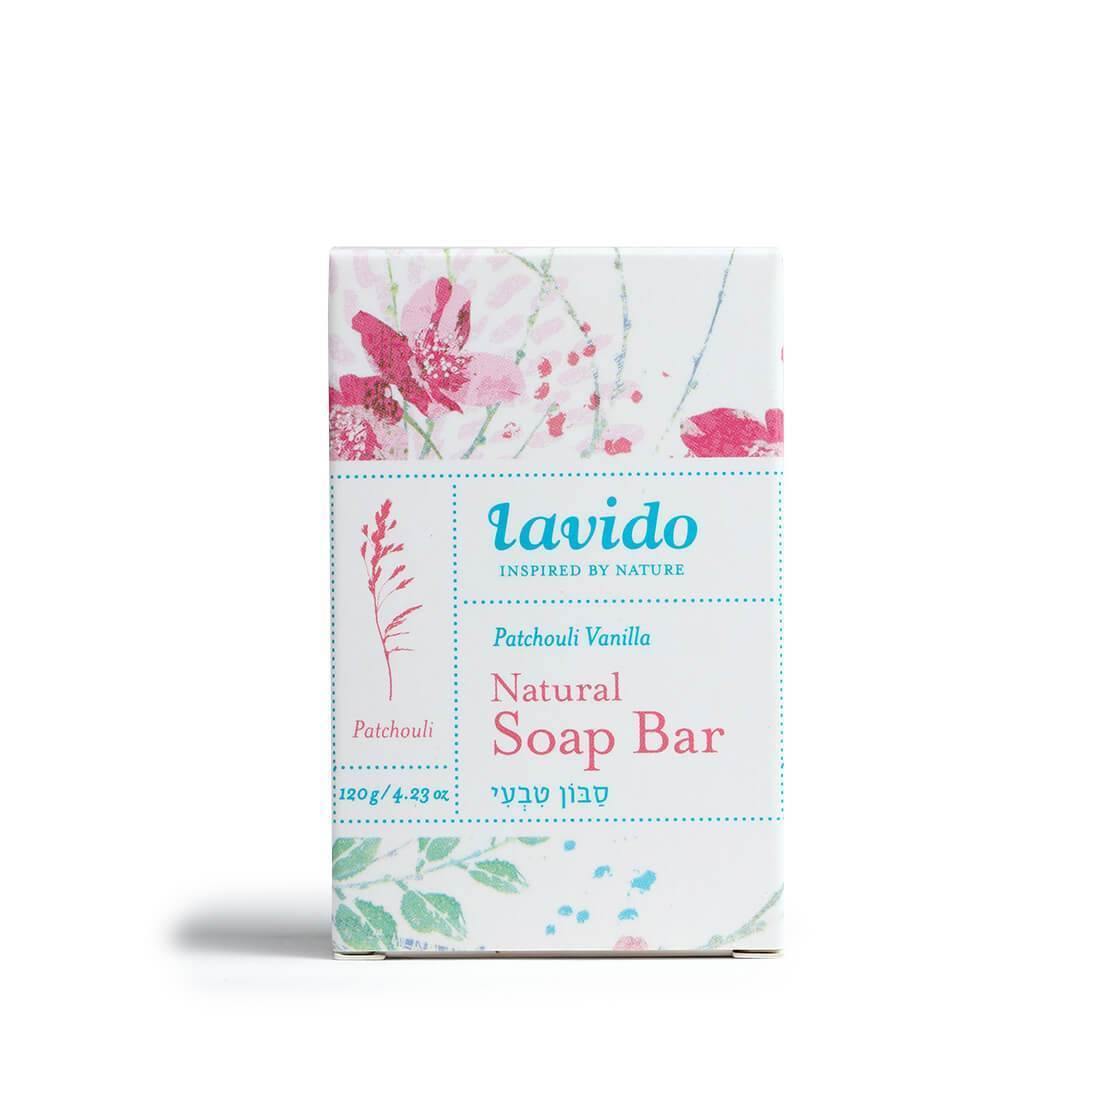 Natural Soap - vanilla patchouli - Lavido - Israel Menu